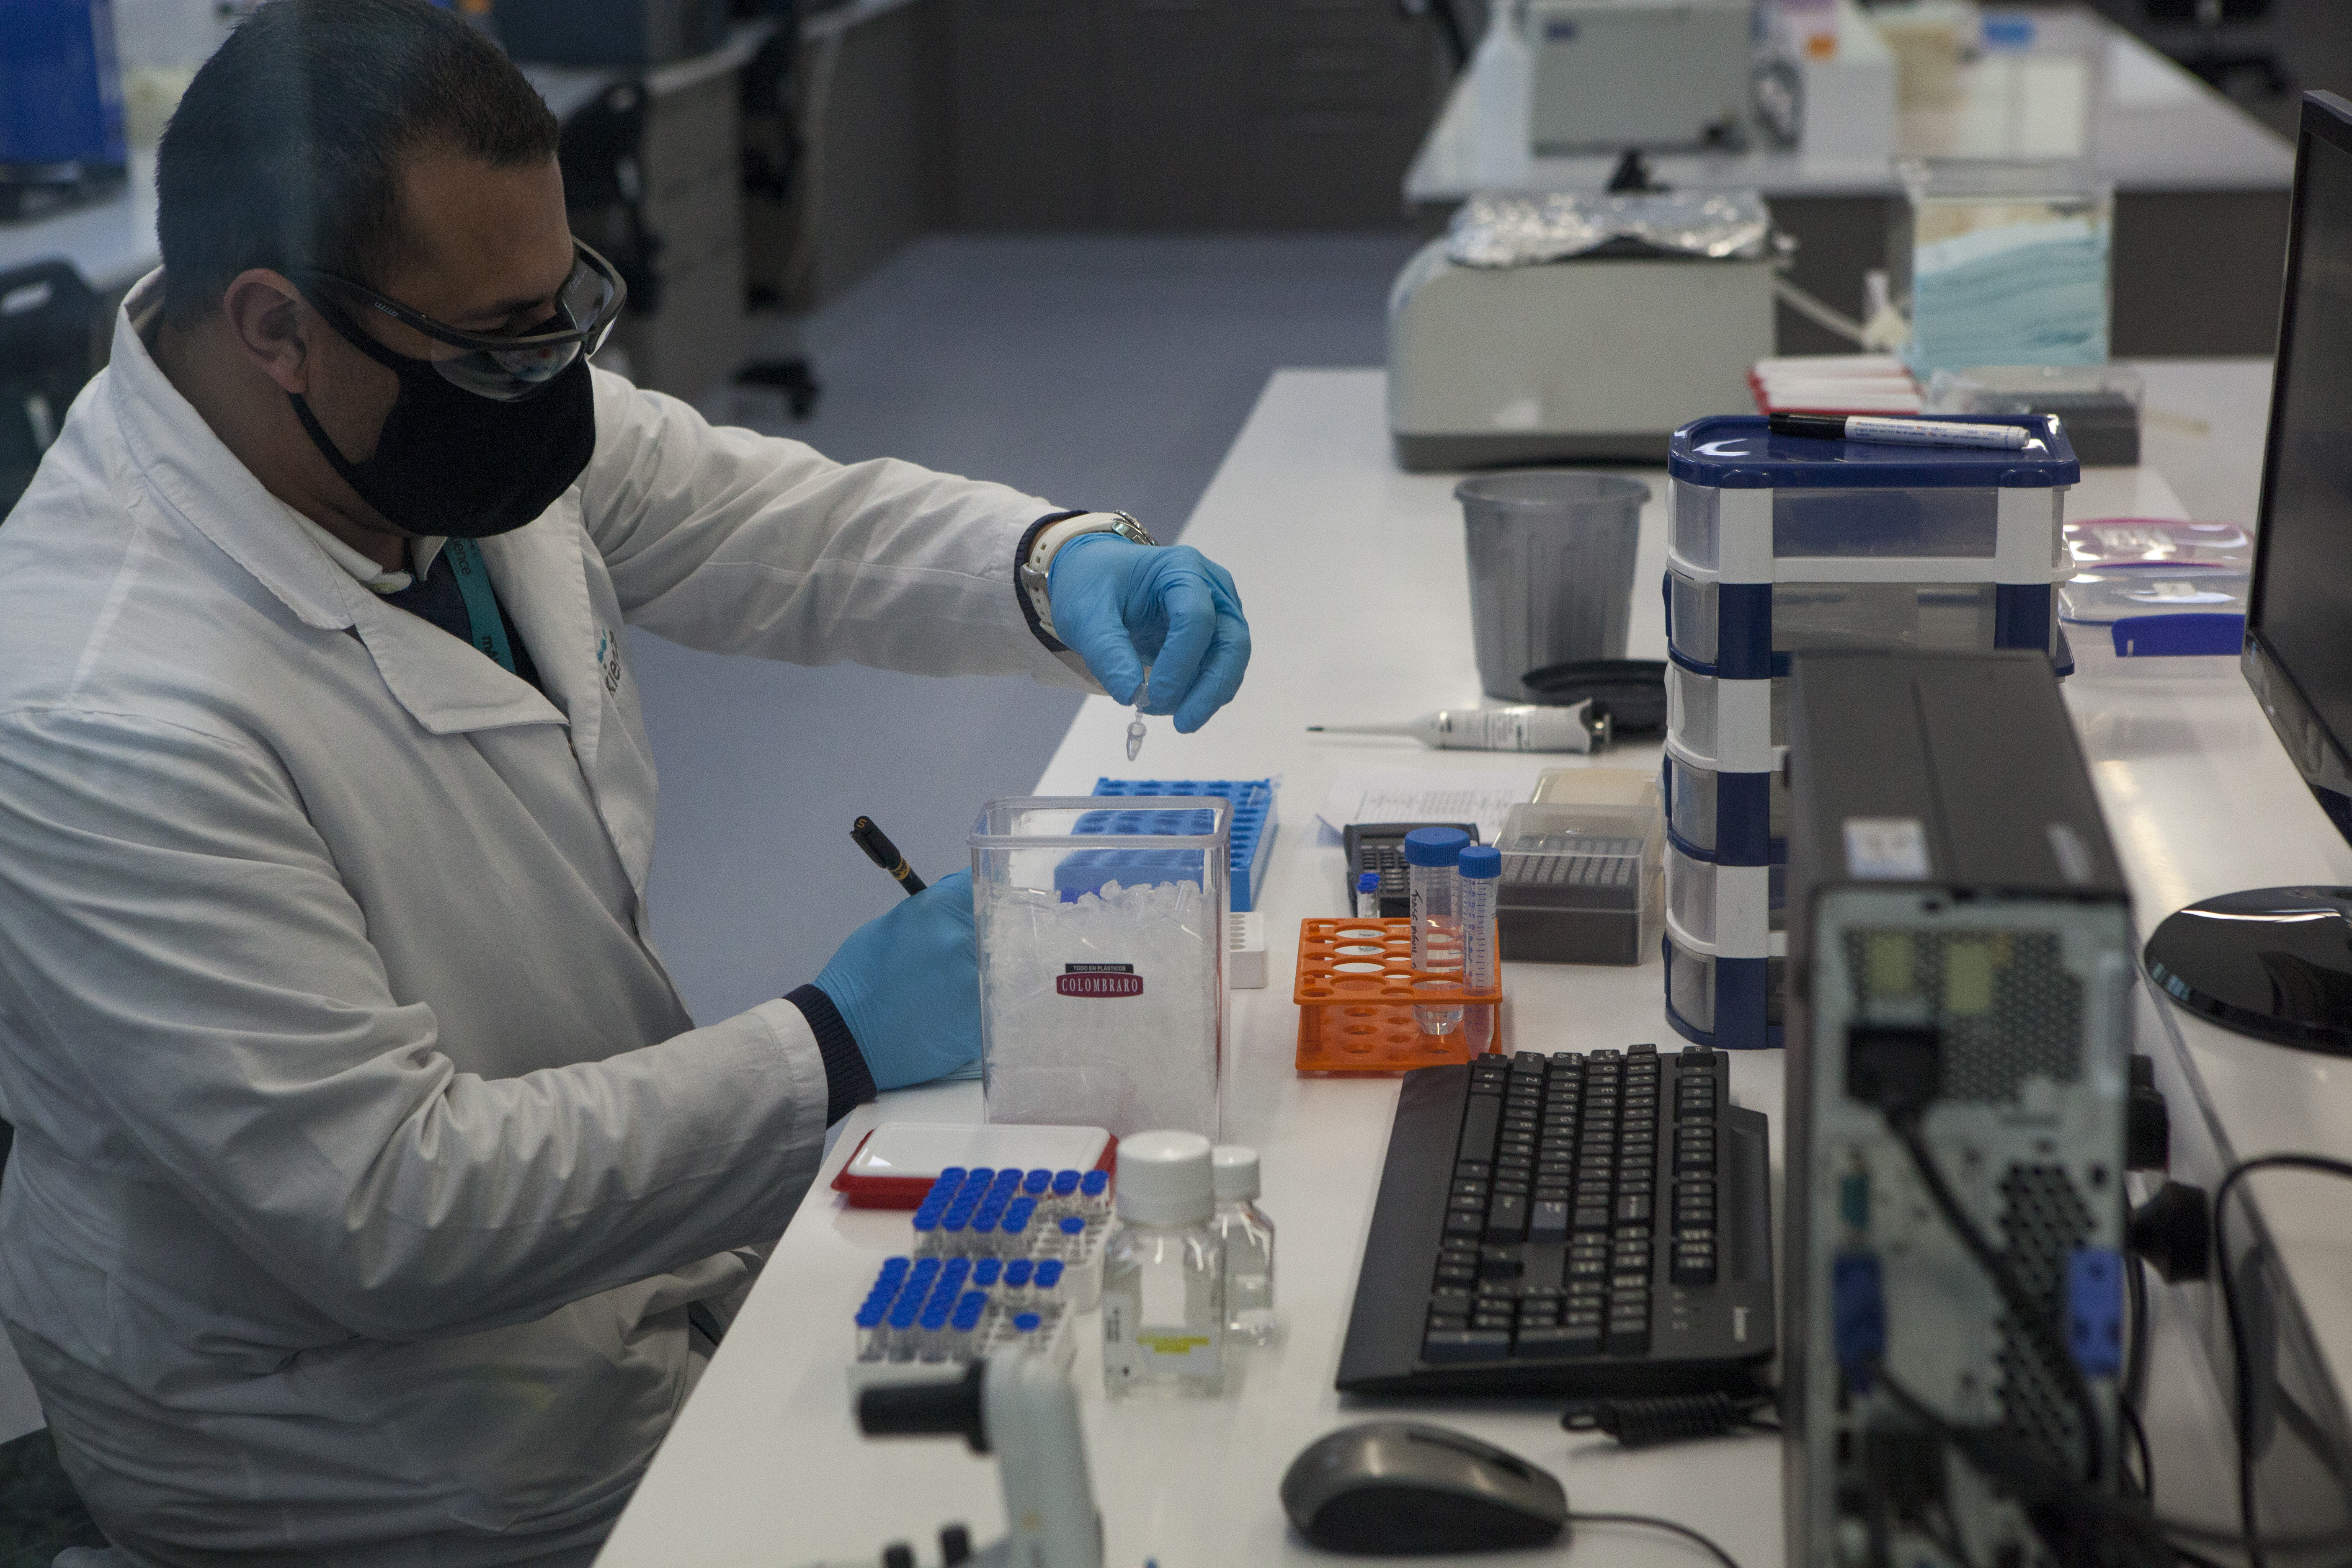 Los investigadores reclutados trabajarán en el proceso de testeo de una vacuna experimental.